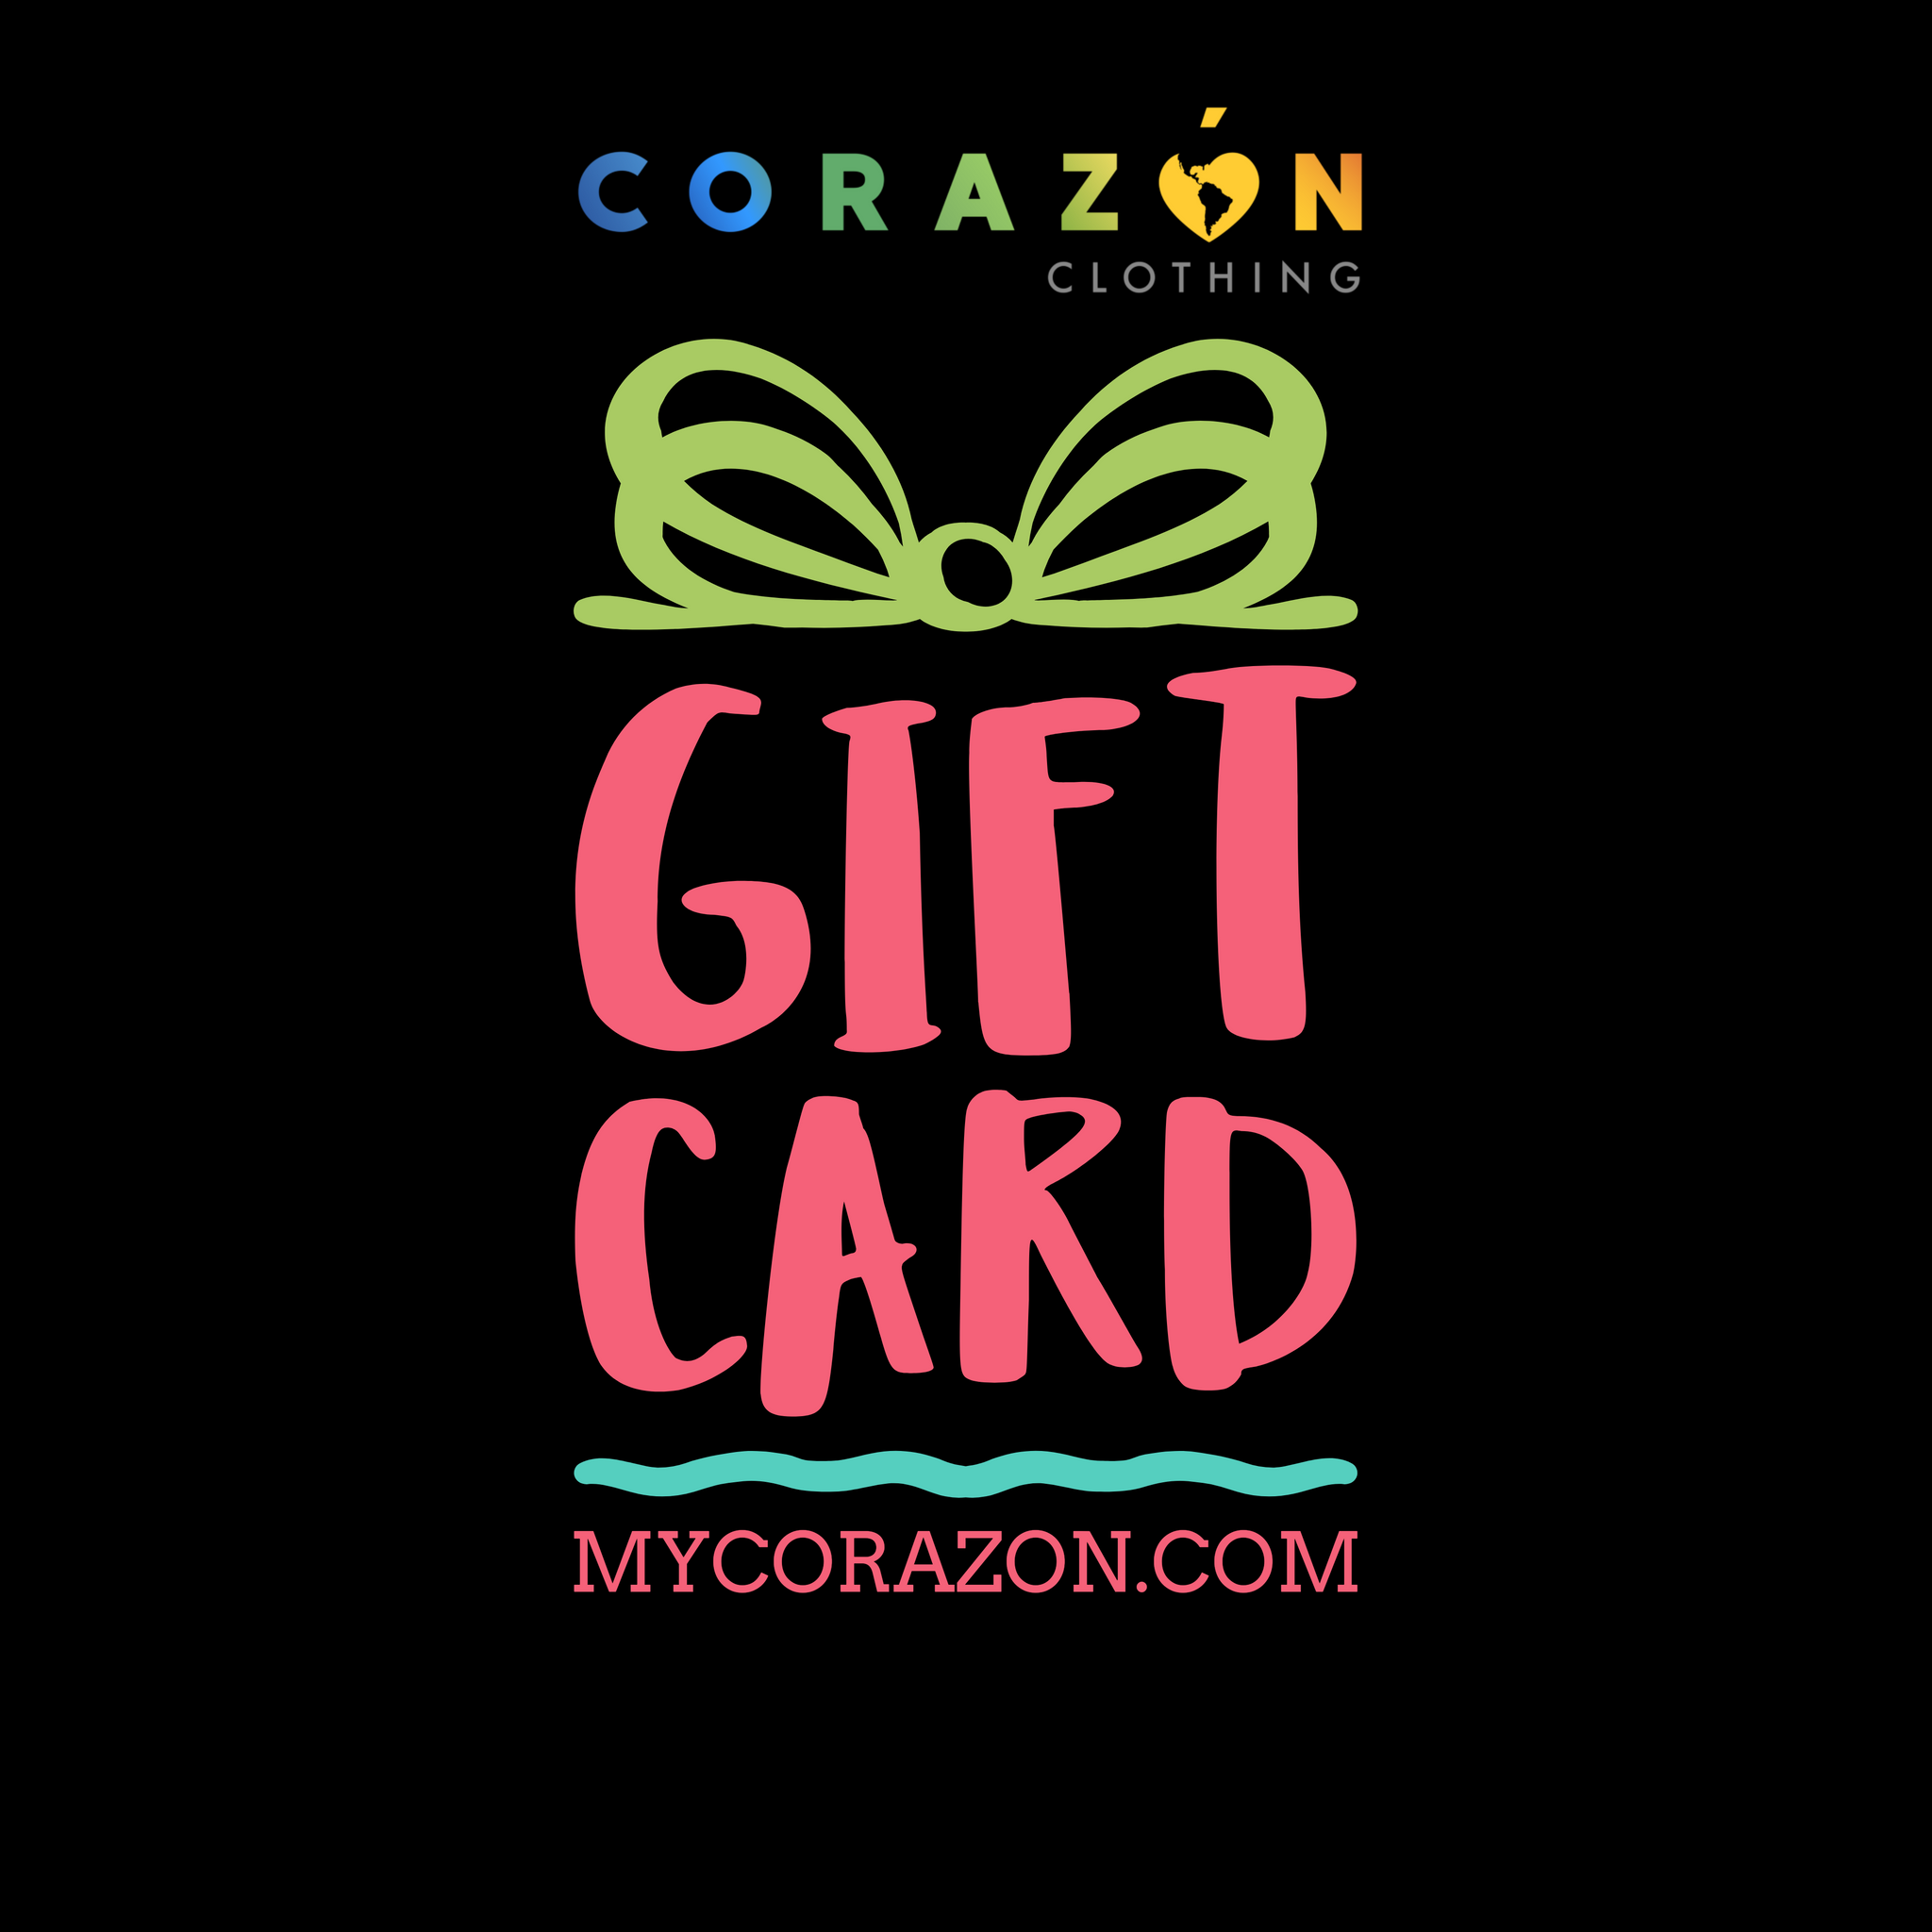 Gift Card - Corazón Clothing